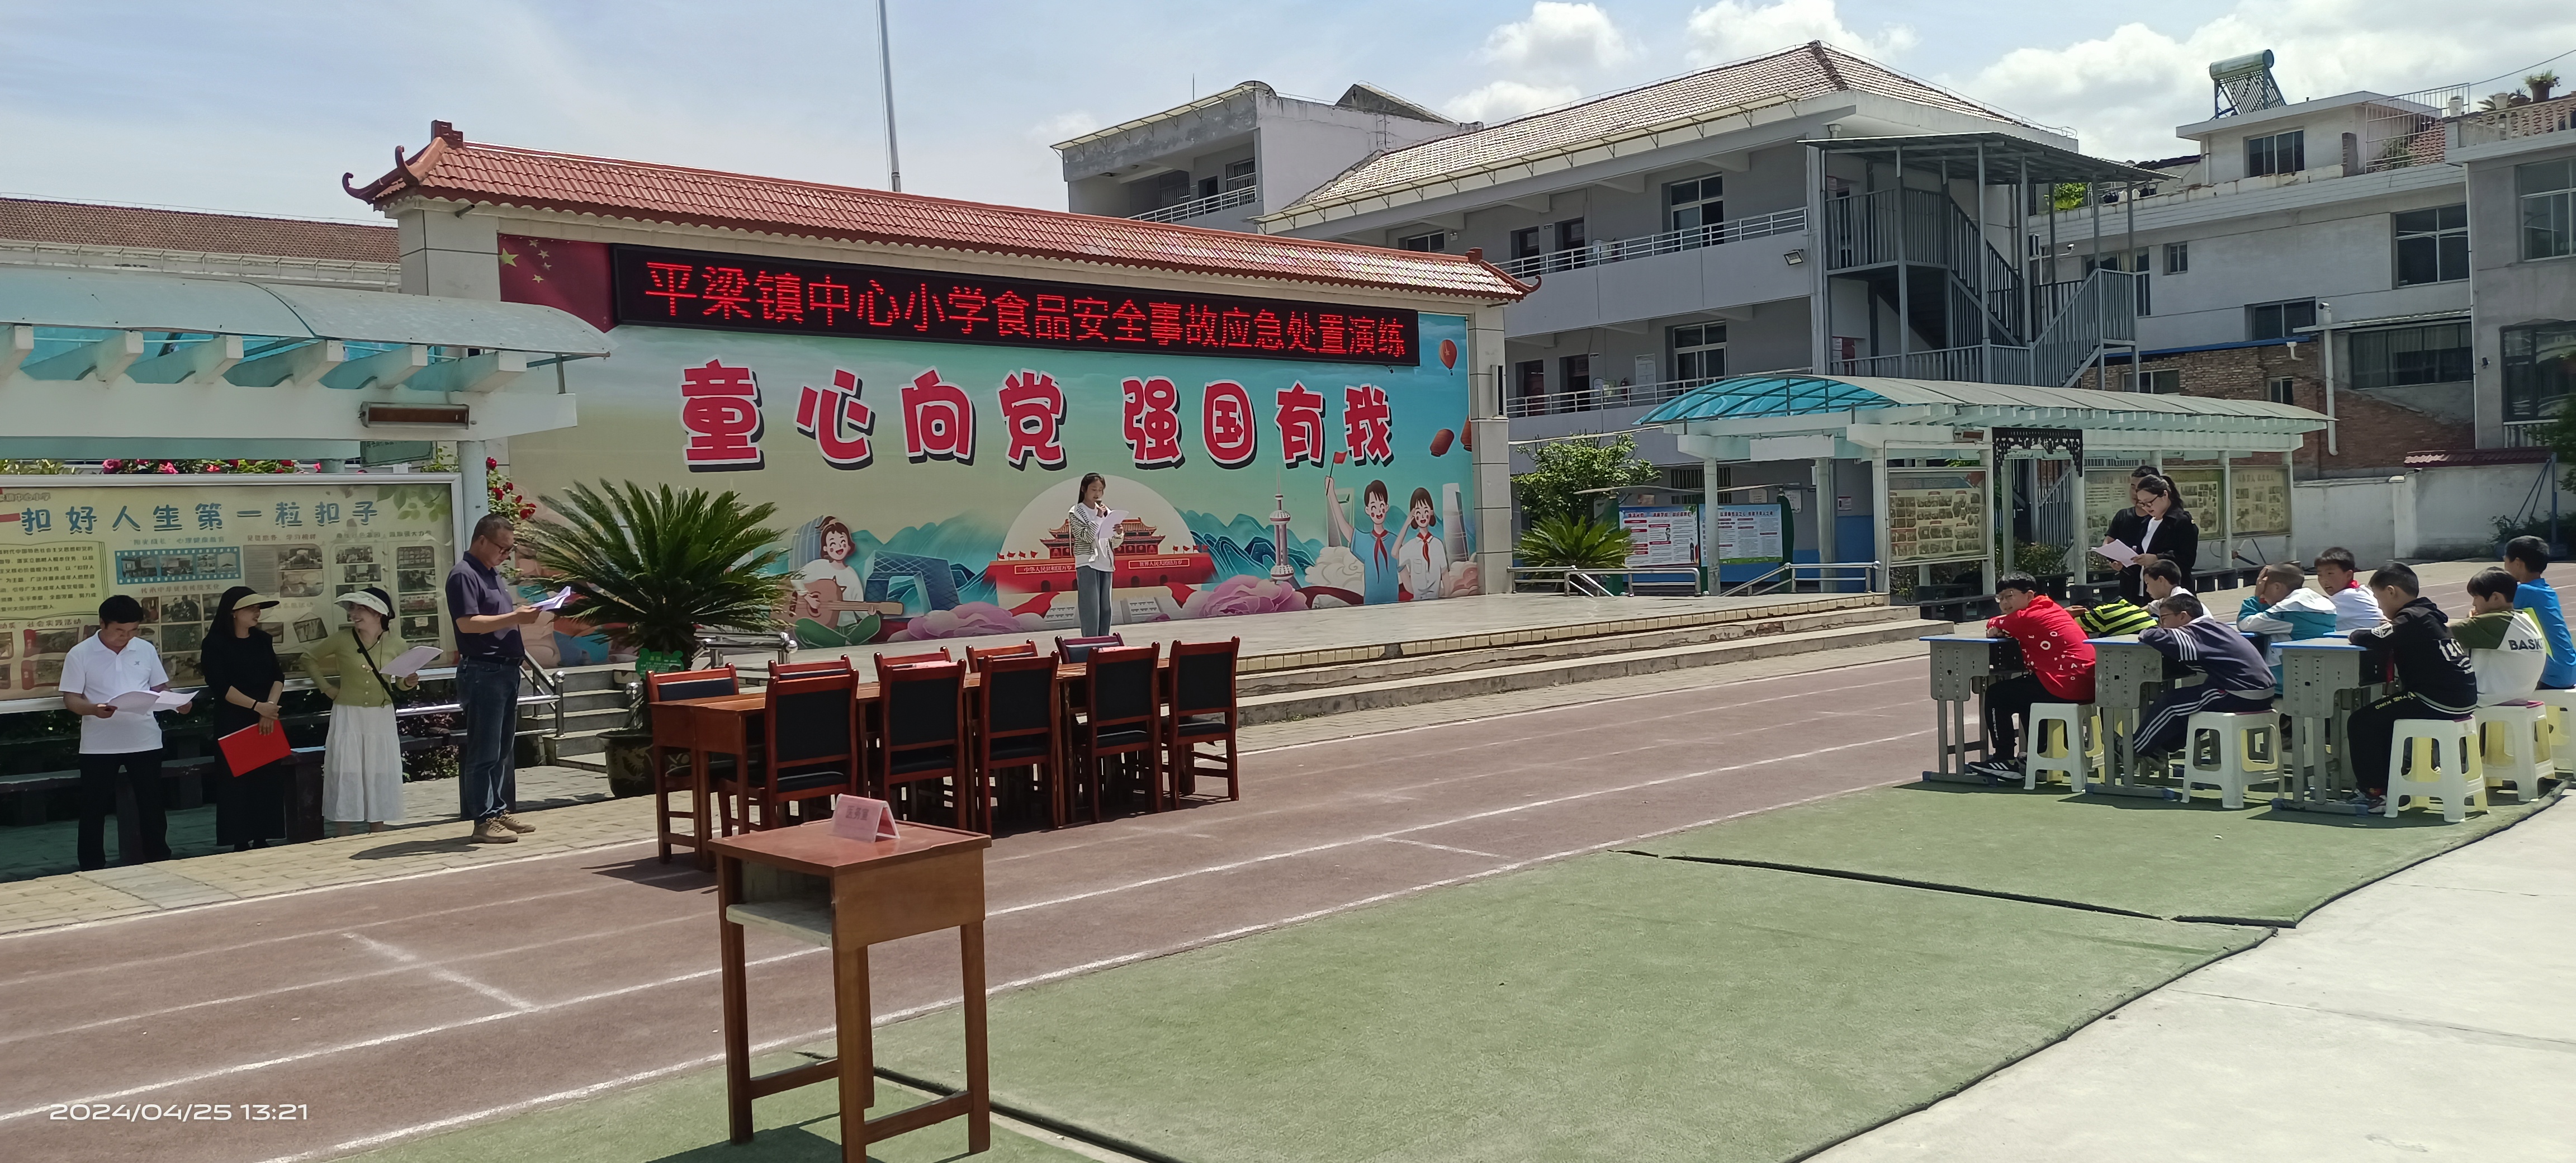 汉阴县平梁镇中心小学举行食品安全事故应急处置演练